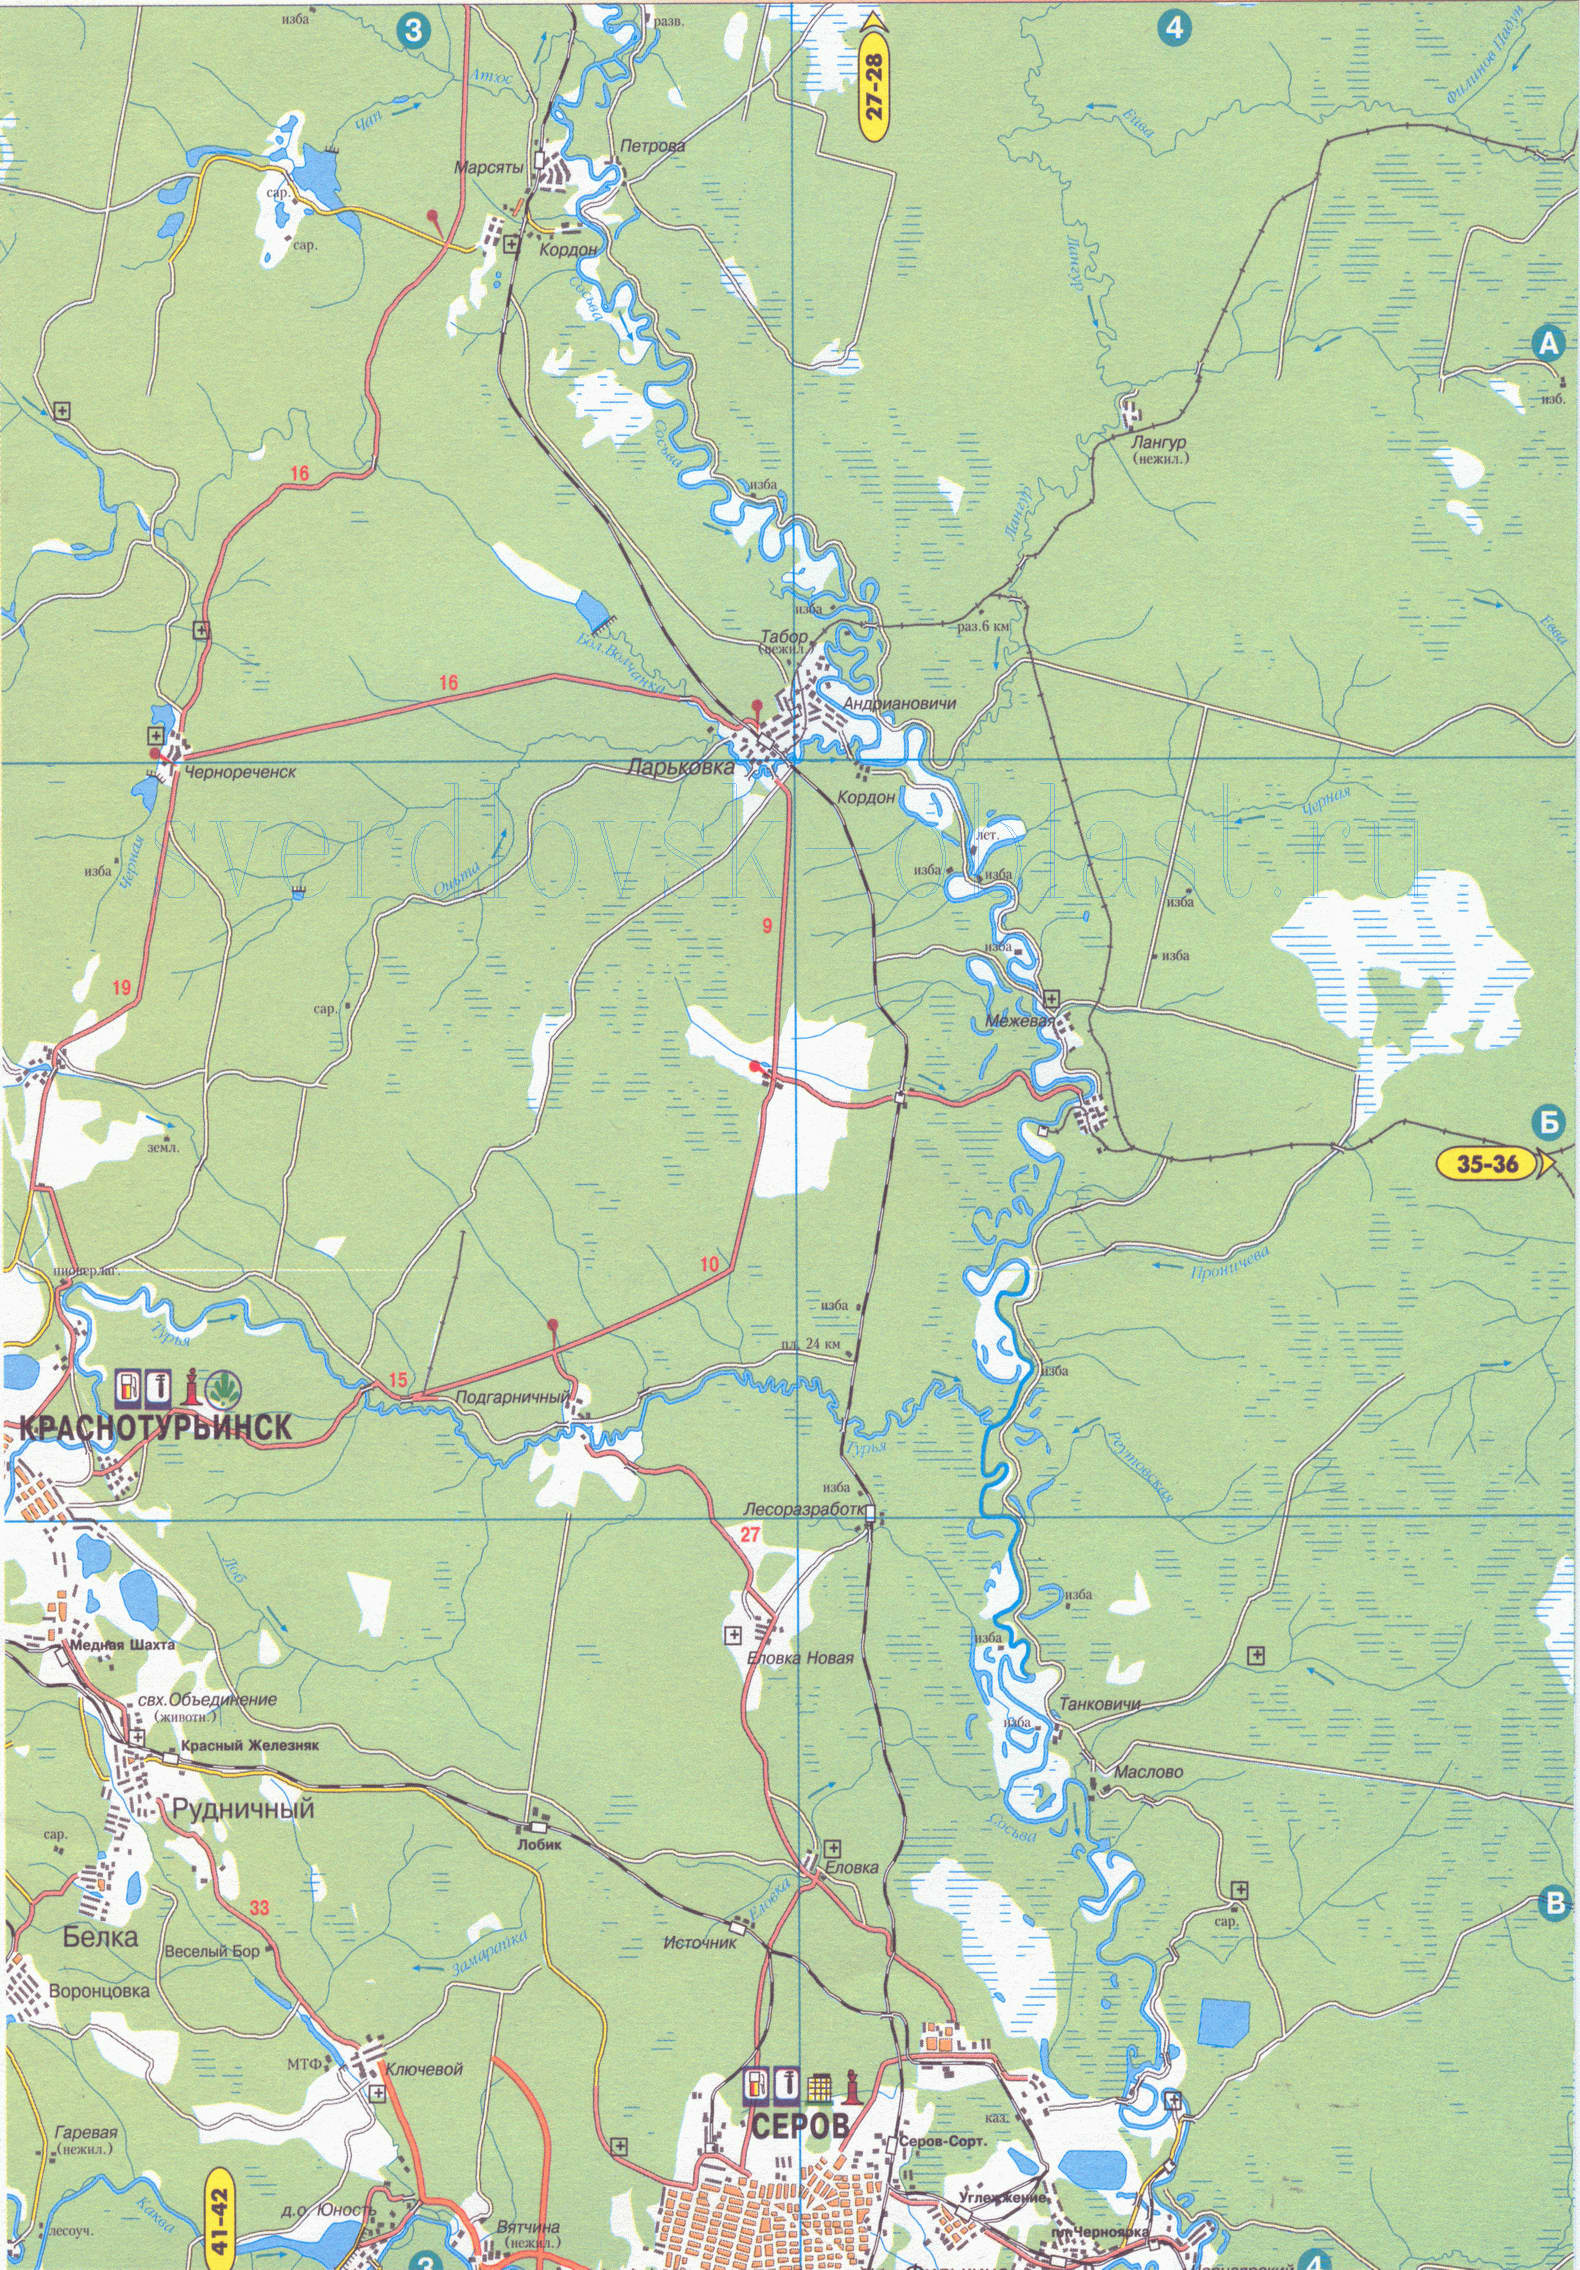 Карта города Краснотурьинск (62 тыс жителей). Карта окрестностей Краснотурьинска Свердловской области, B0 - 